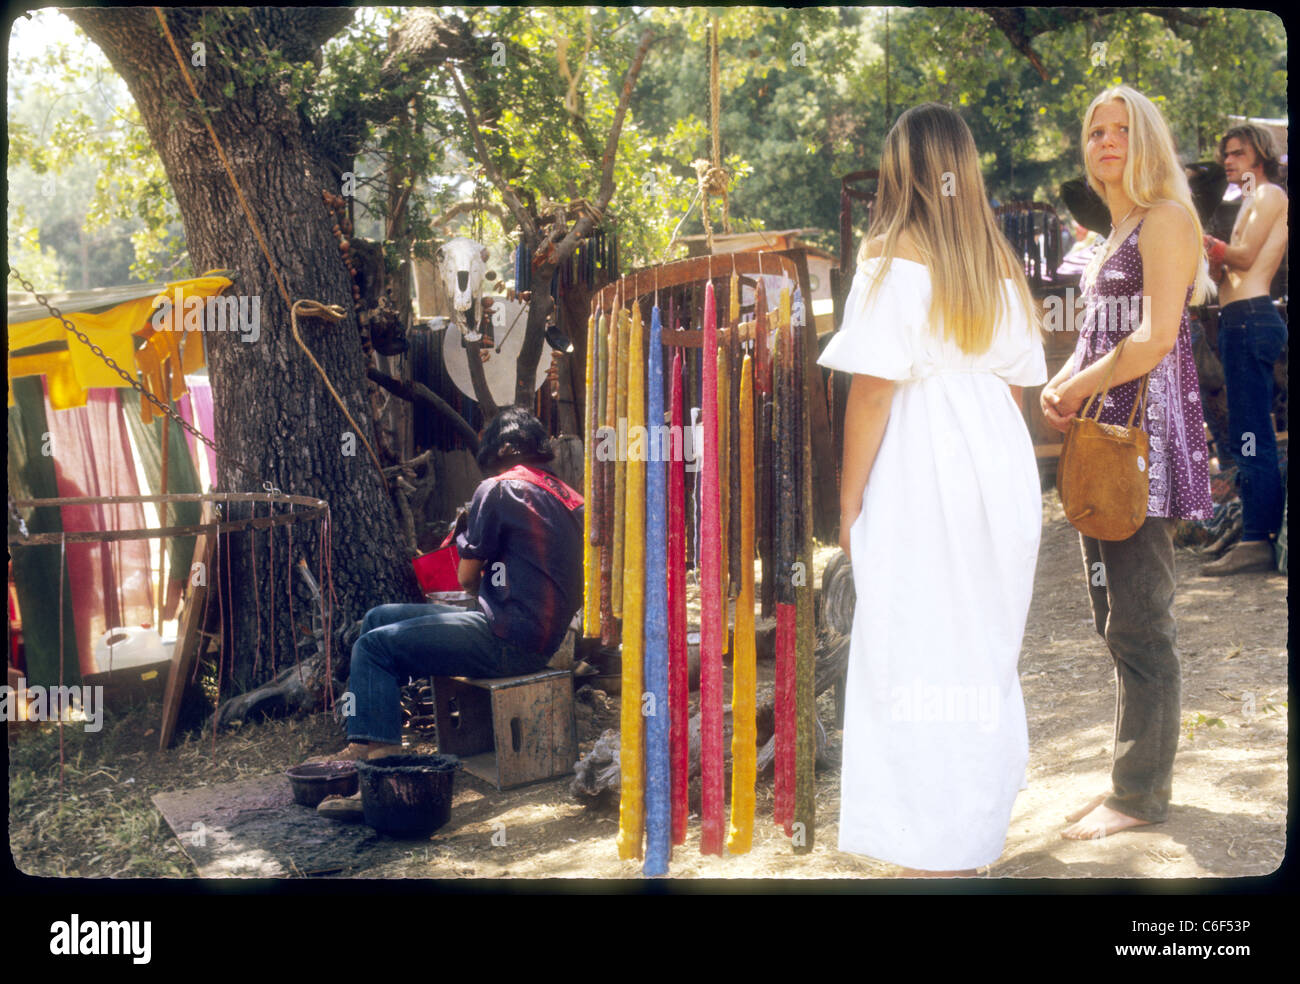 Kerzen zum Verkauf an Stand hübsche Frauen in Kleidern Renaissance Vergnügen Faire Southern California Hippies der 1970er Jahre Stockfoto